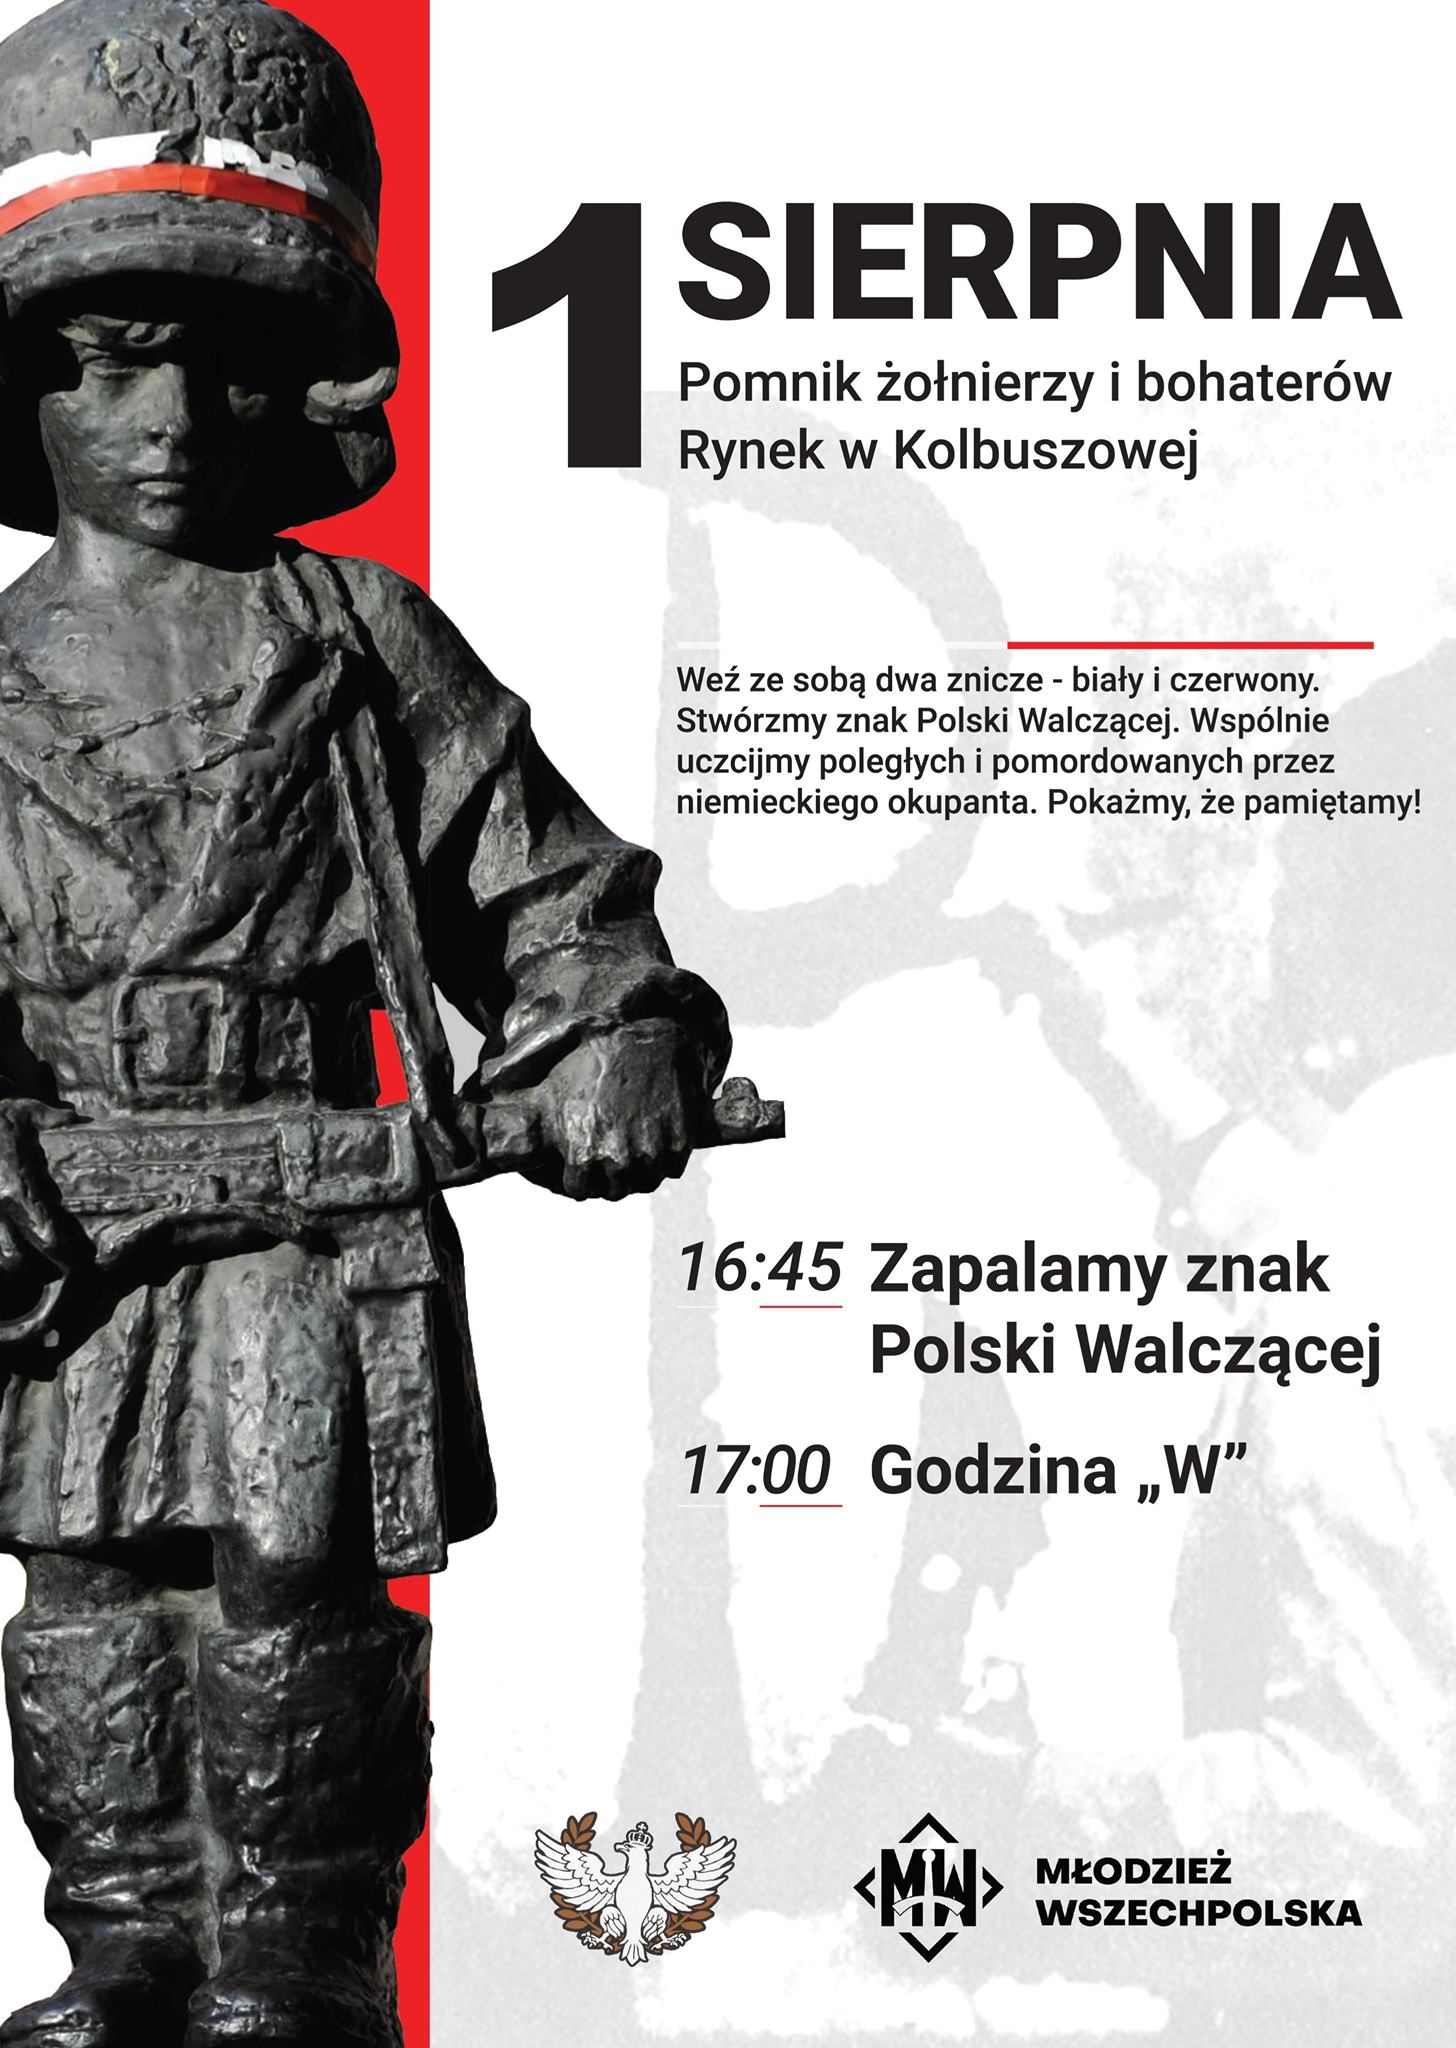 Przed nami obchody wybuchu Powstania Warszawy